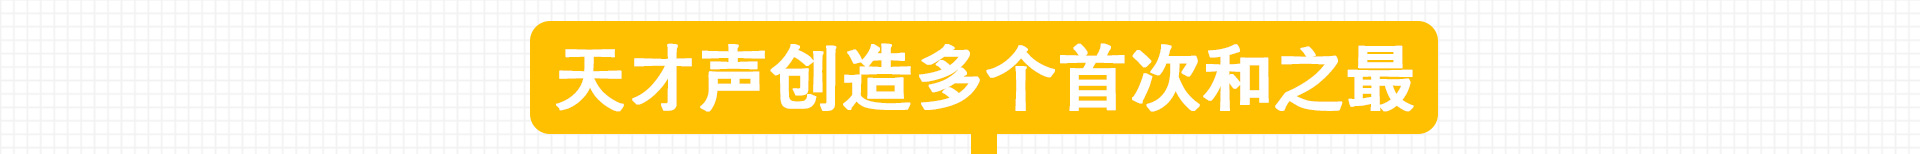 加盟网站zuizhong_12.jpg